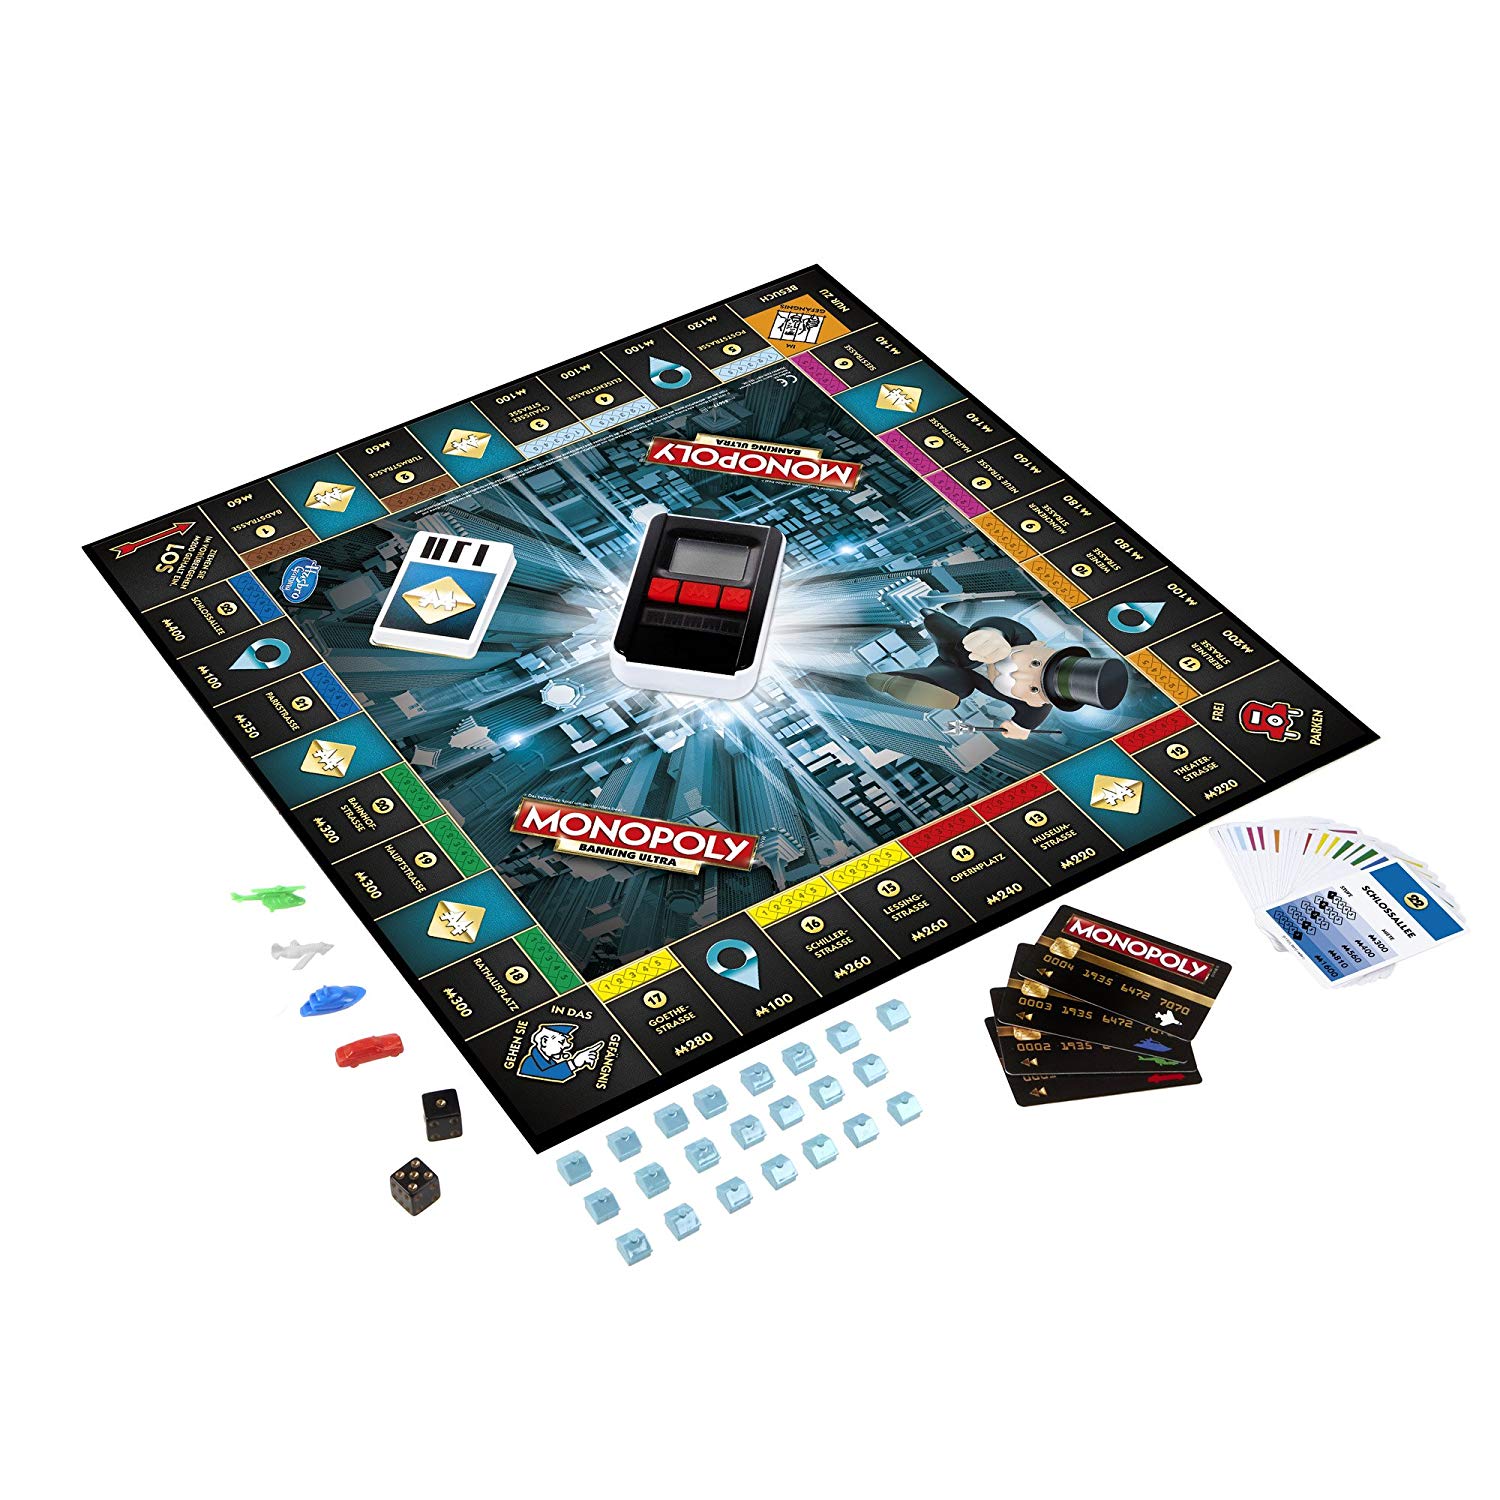 Hasbro Spiele B6677E39 - Monopoly Banking Ultra, Familienspiel